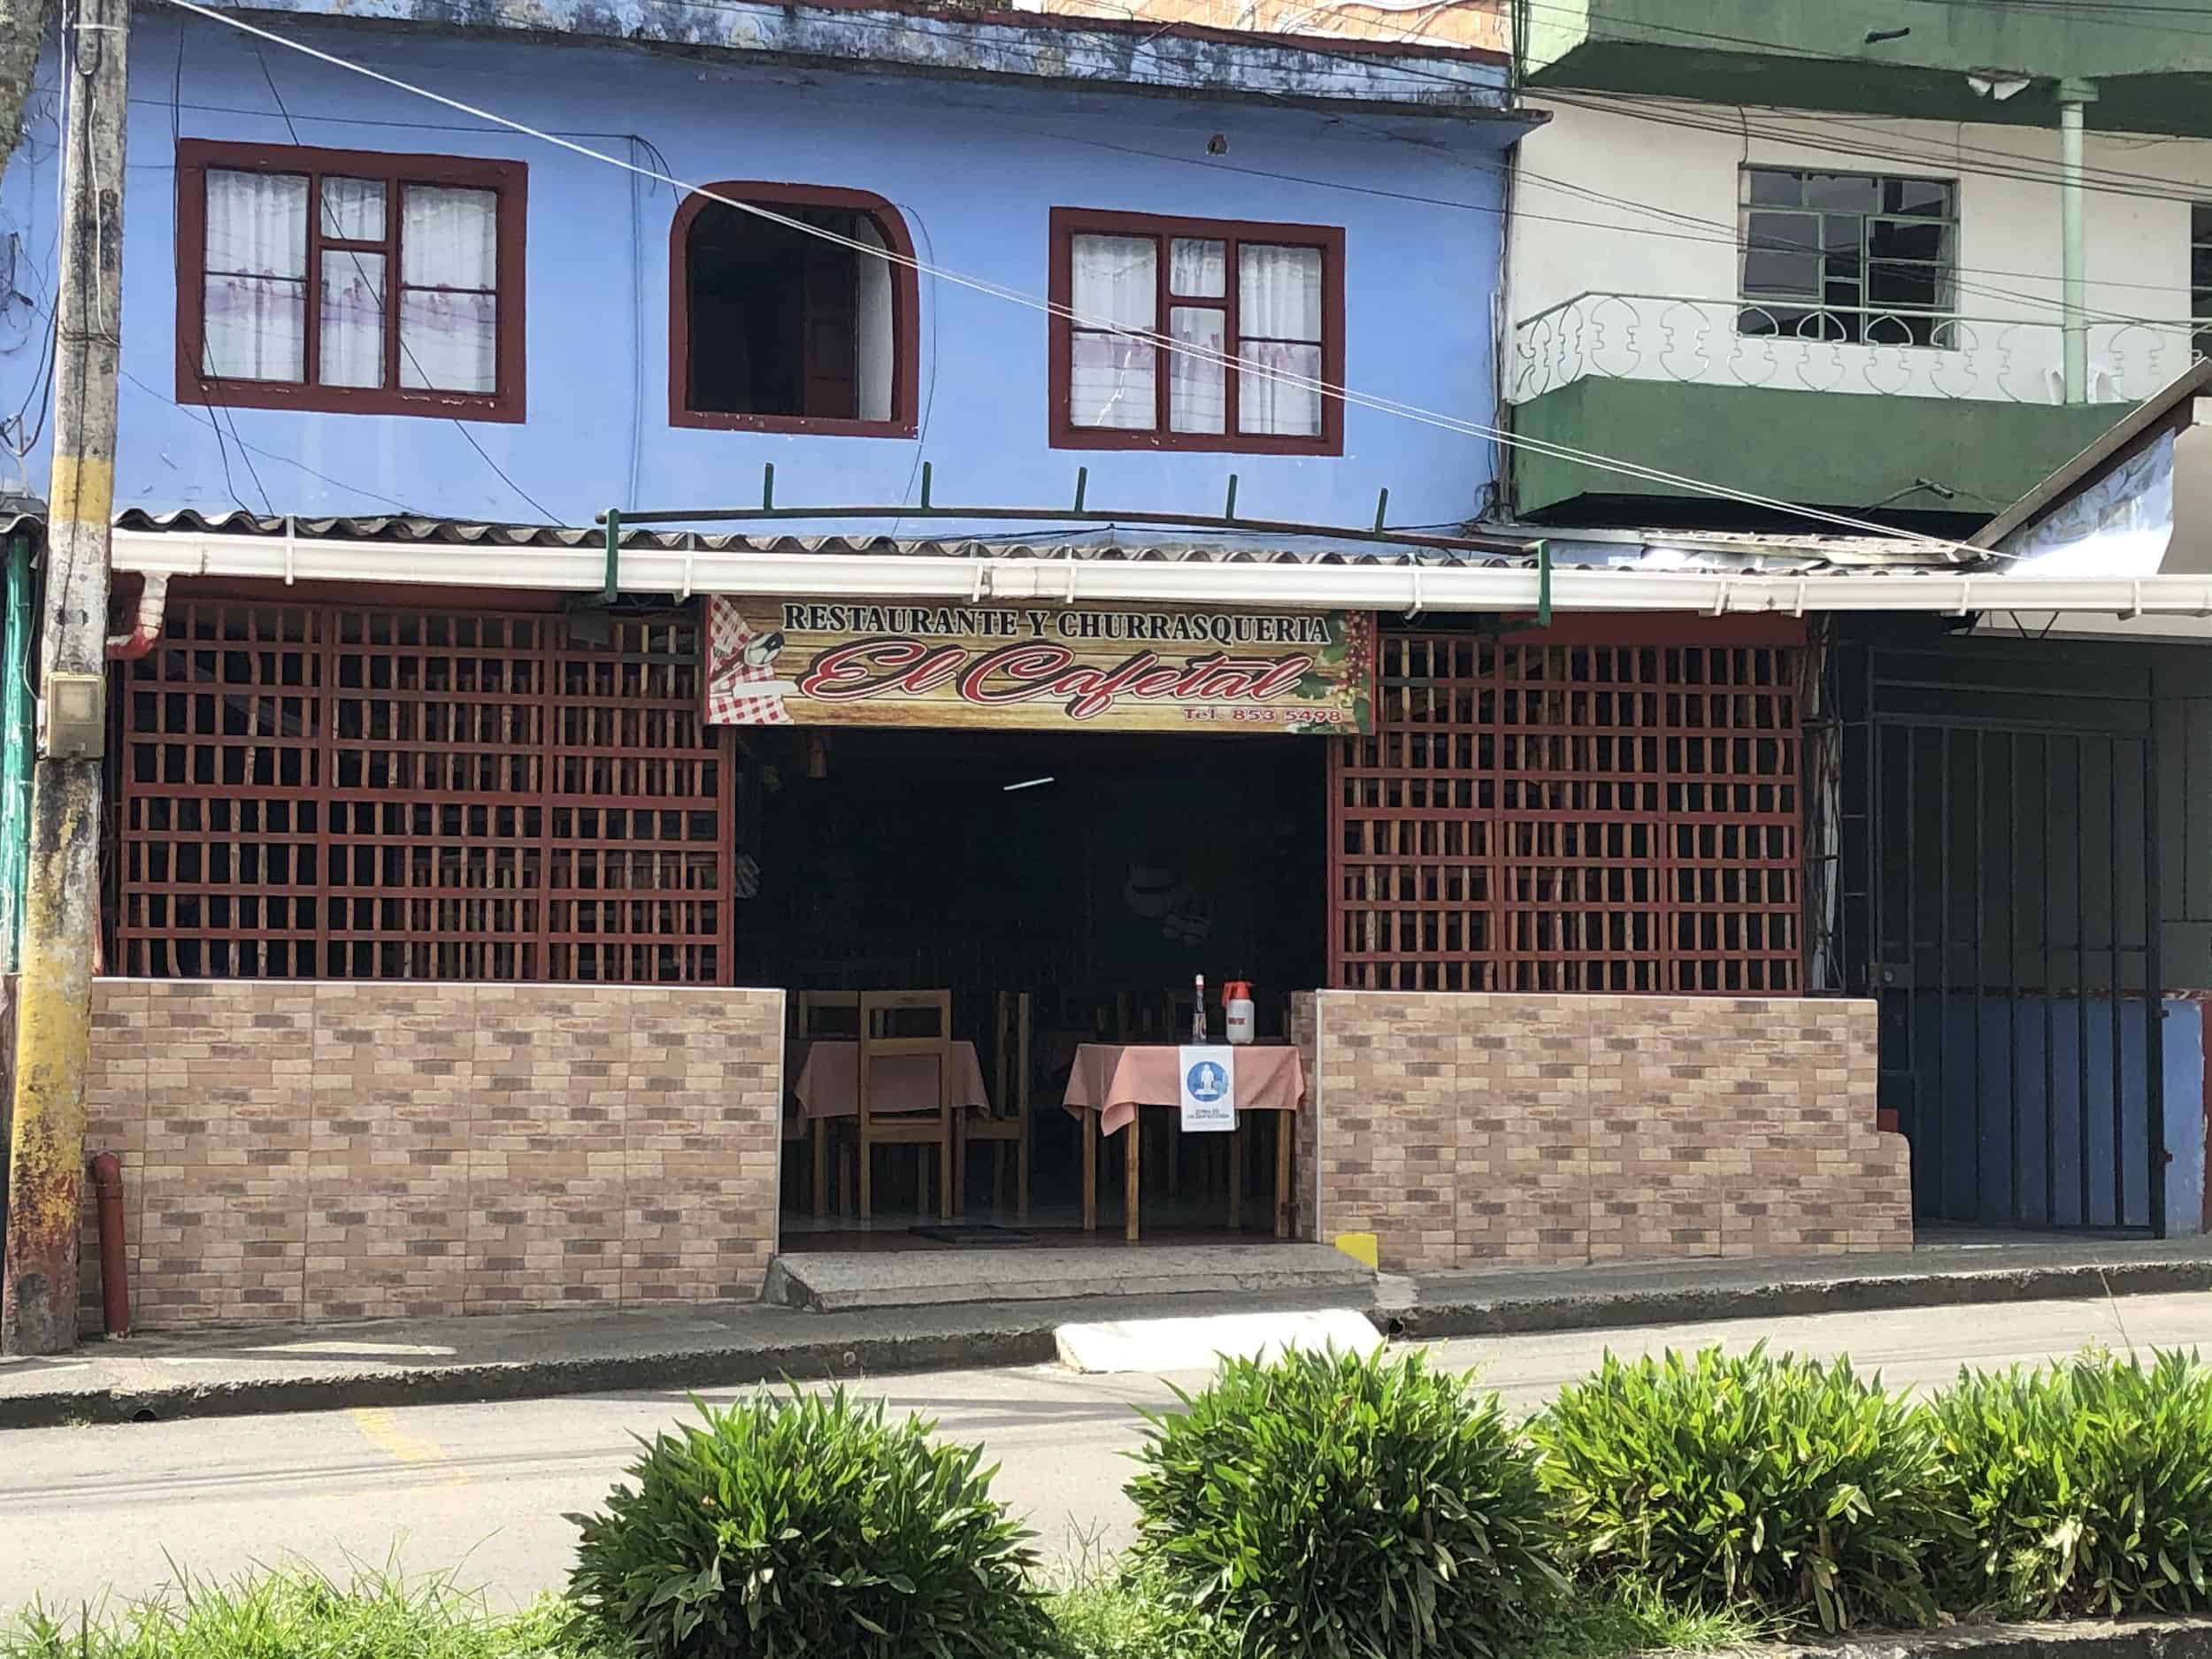 El Cafetal in Anserma, Caldas, Colombia